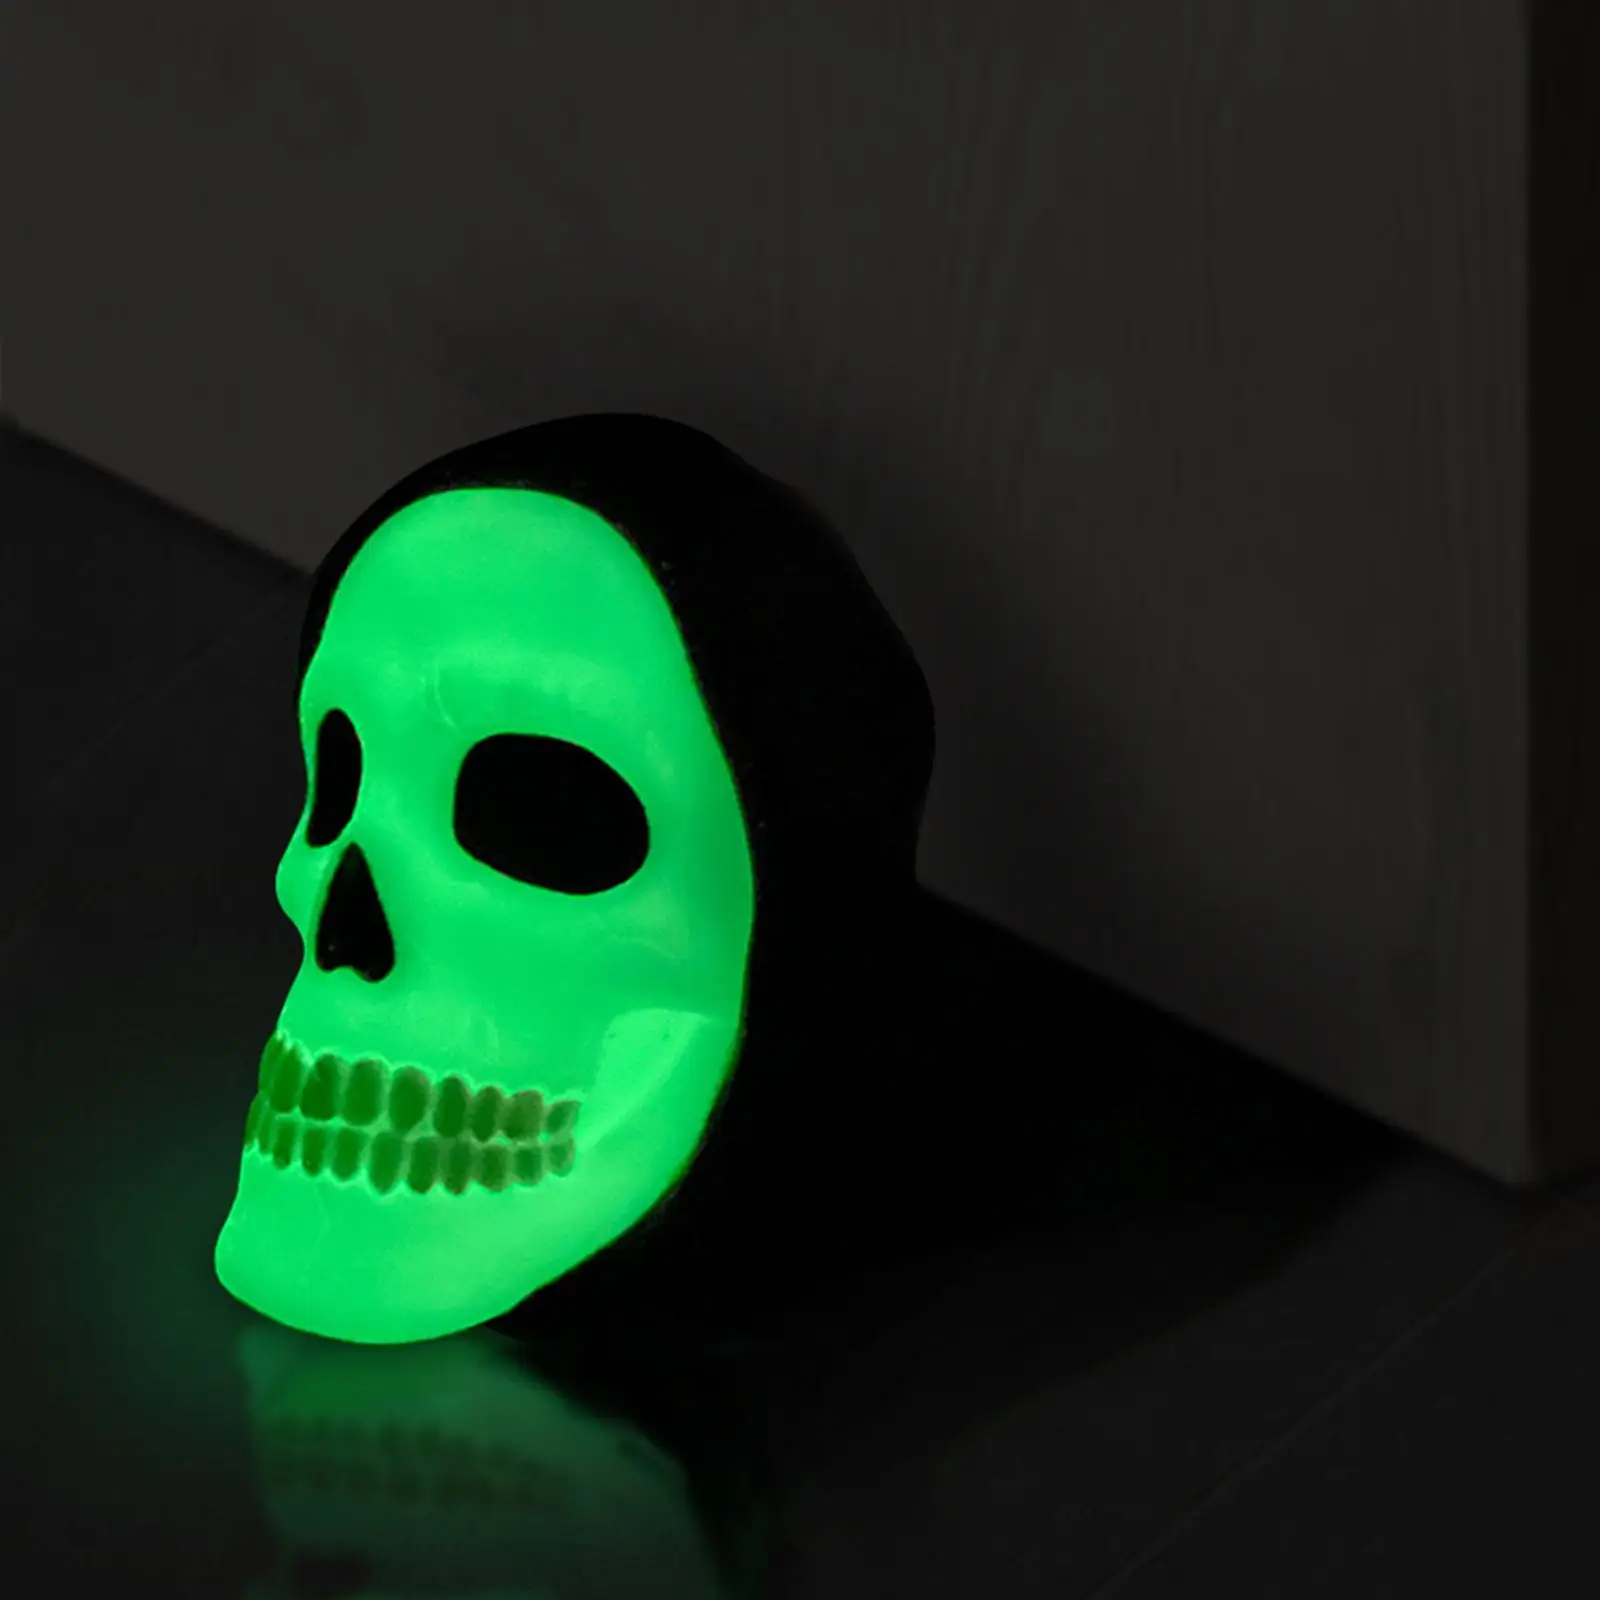 Skull Door Stopper Ornament Stable Glow Decorative Anti Collision Wedge Doorstop for Living Room Gift Home Halloween Bathroom